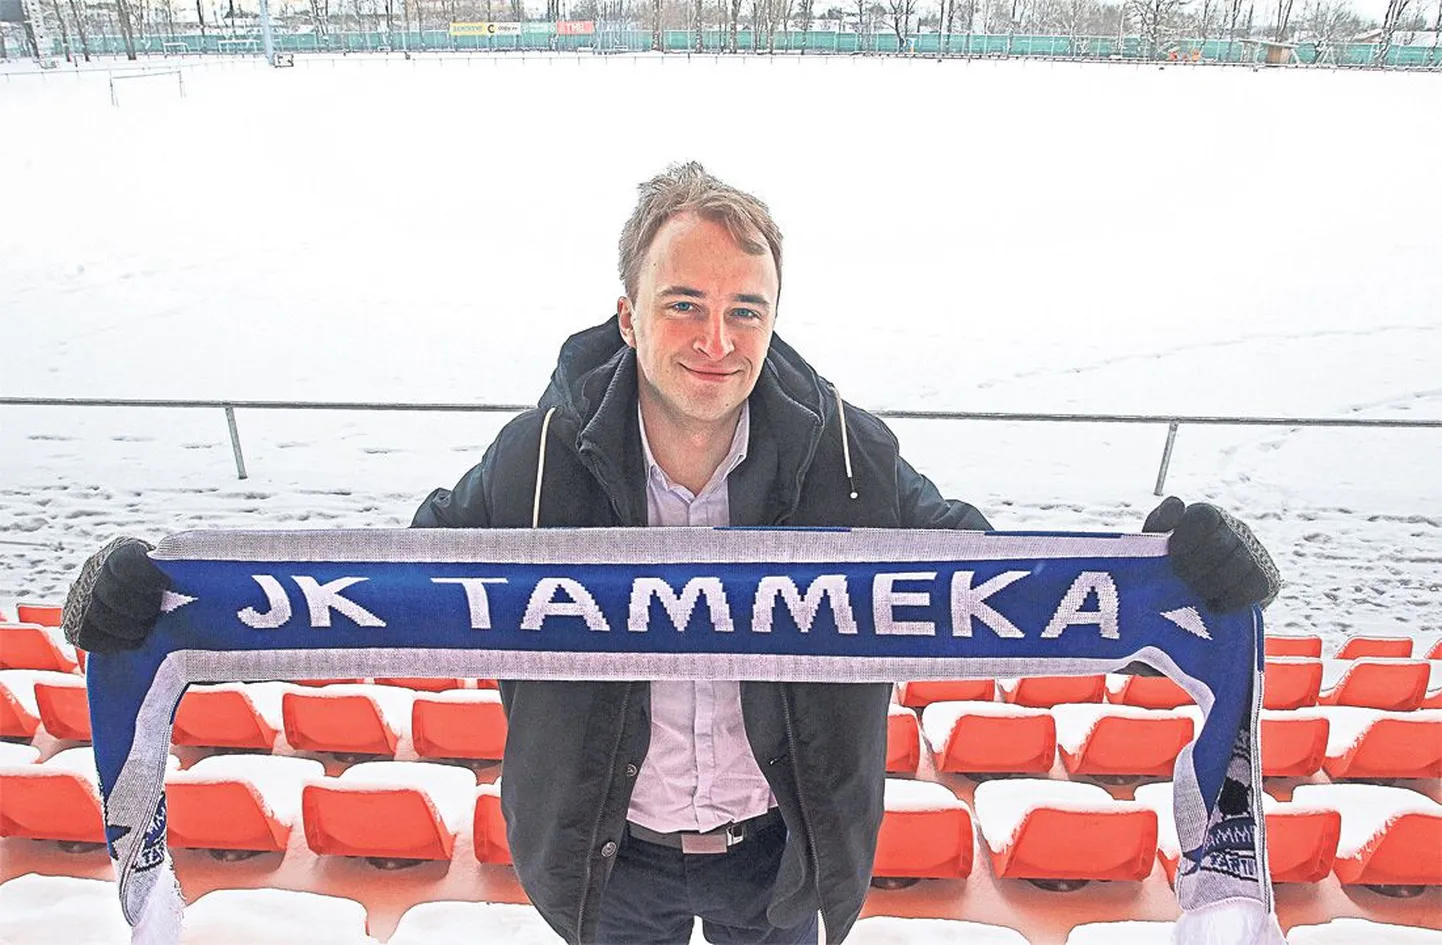 Esimest korda sattus Kalle Paas Tamme staadionile seitse aastat tagasi raadiotööd tehes, nüüdseks on temast saanud JK Tammeka tegevjuht.